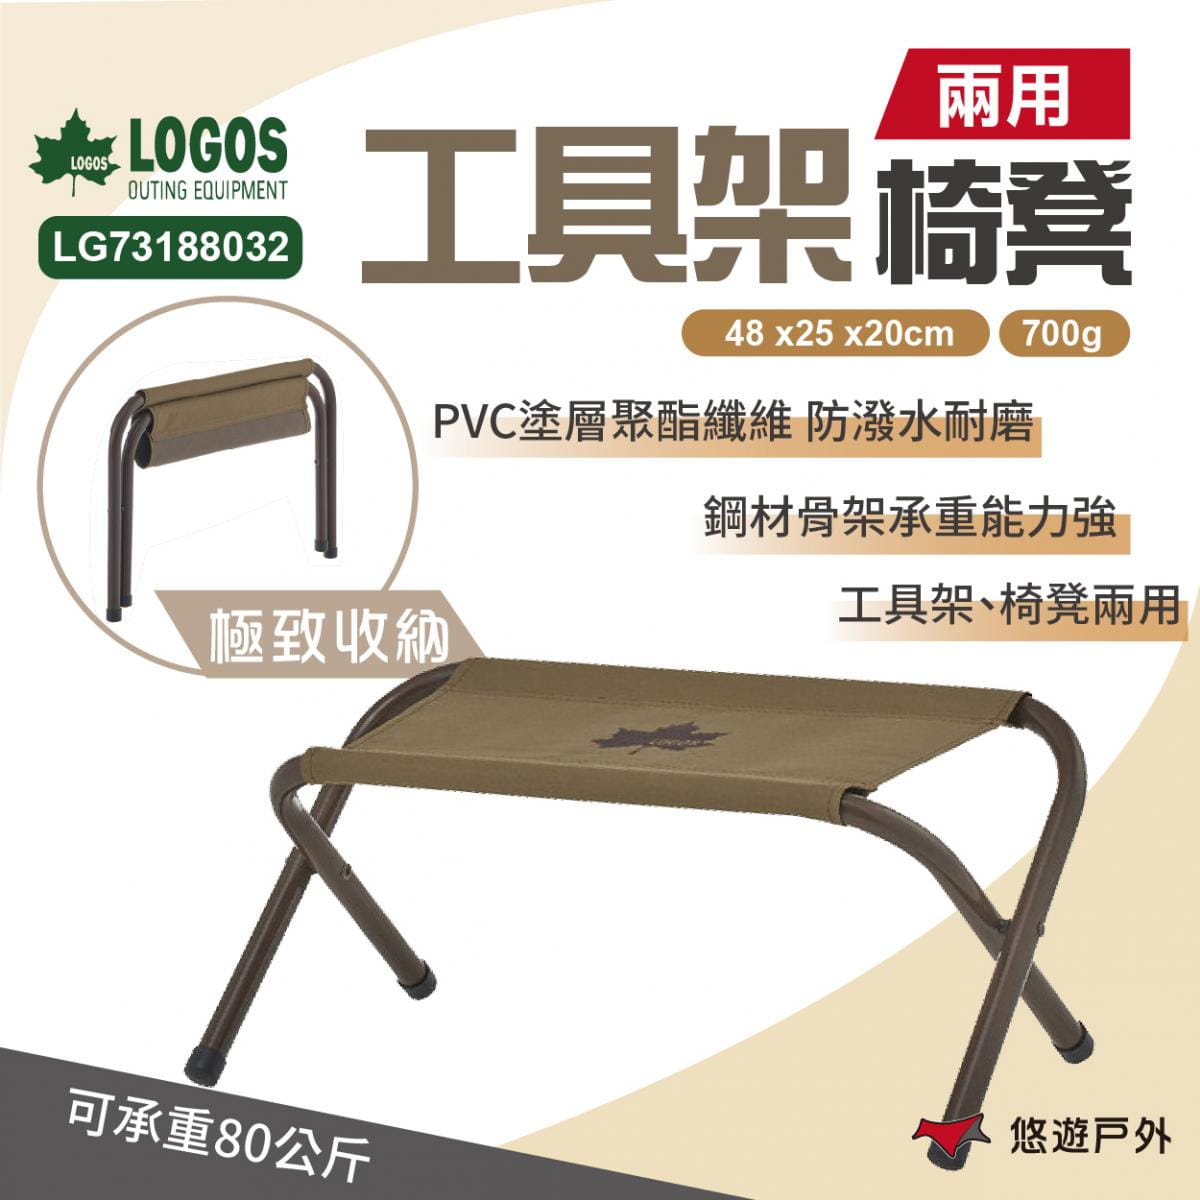 【LOGOS】兩用工具架椅凳 LG73188032 (悠遊戶外) 0